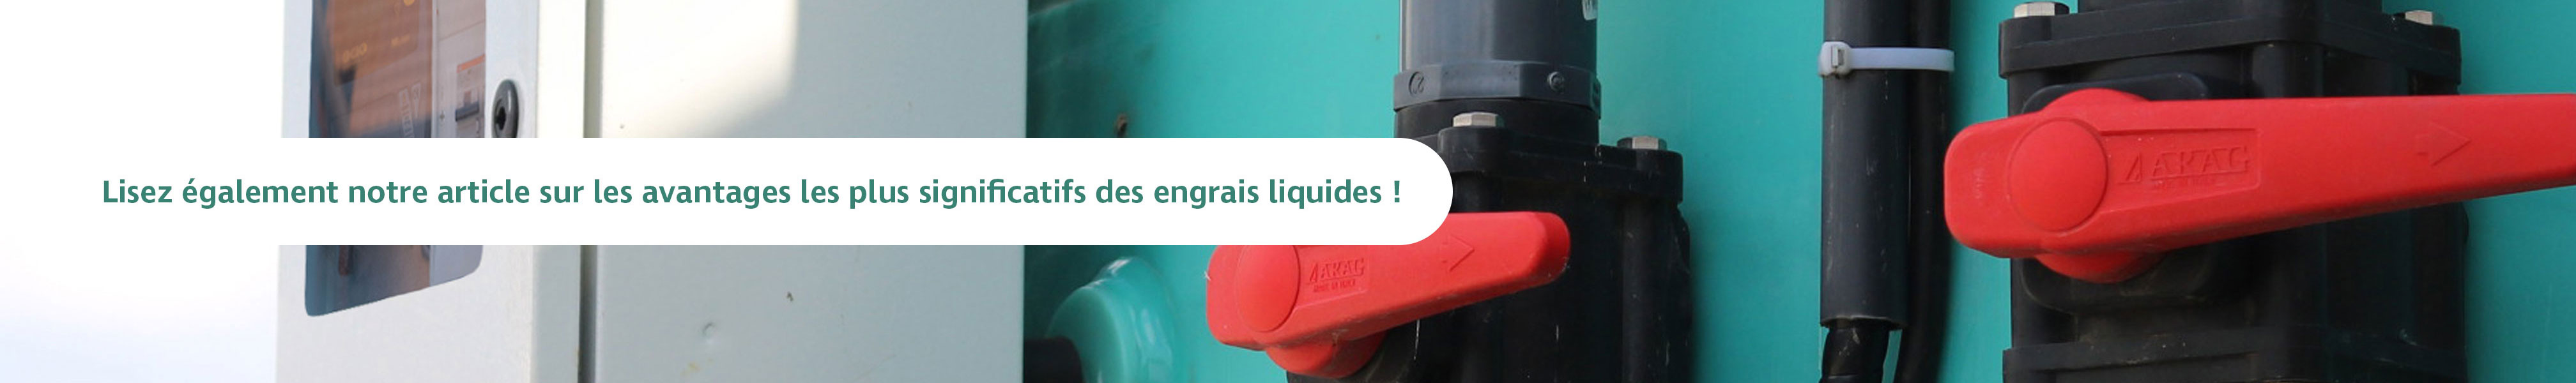 Lisez également nos articles sur les avantages les plus significatifs des engrais liquides !